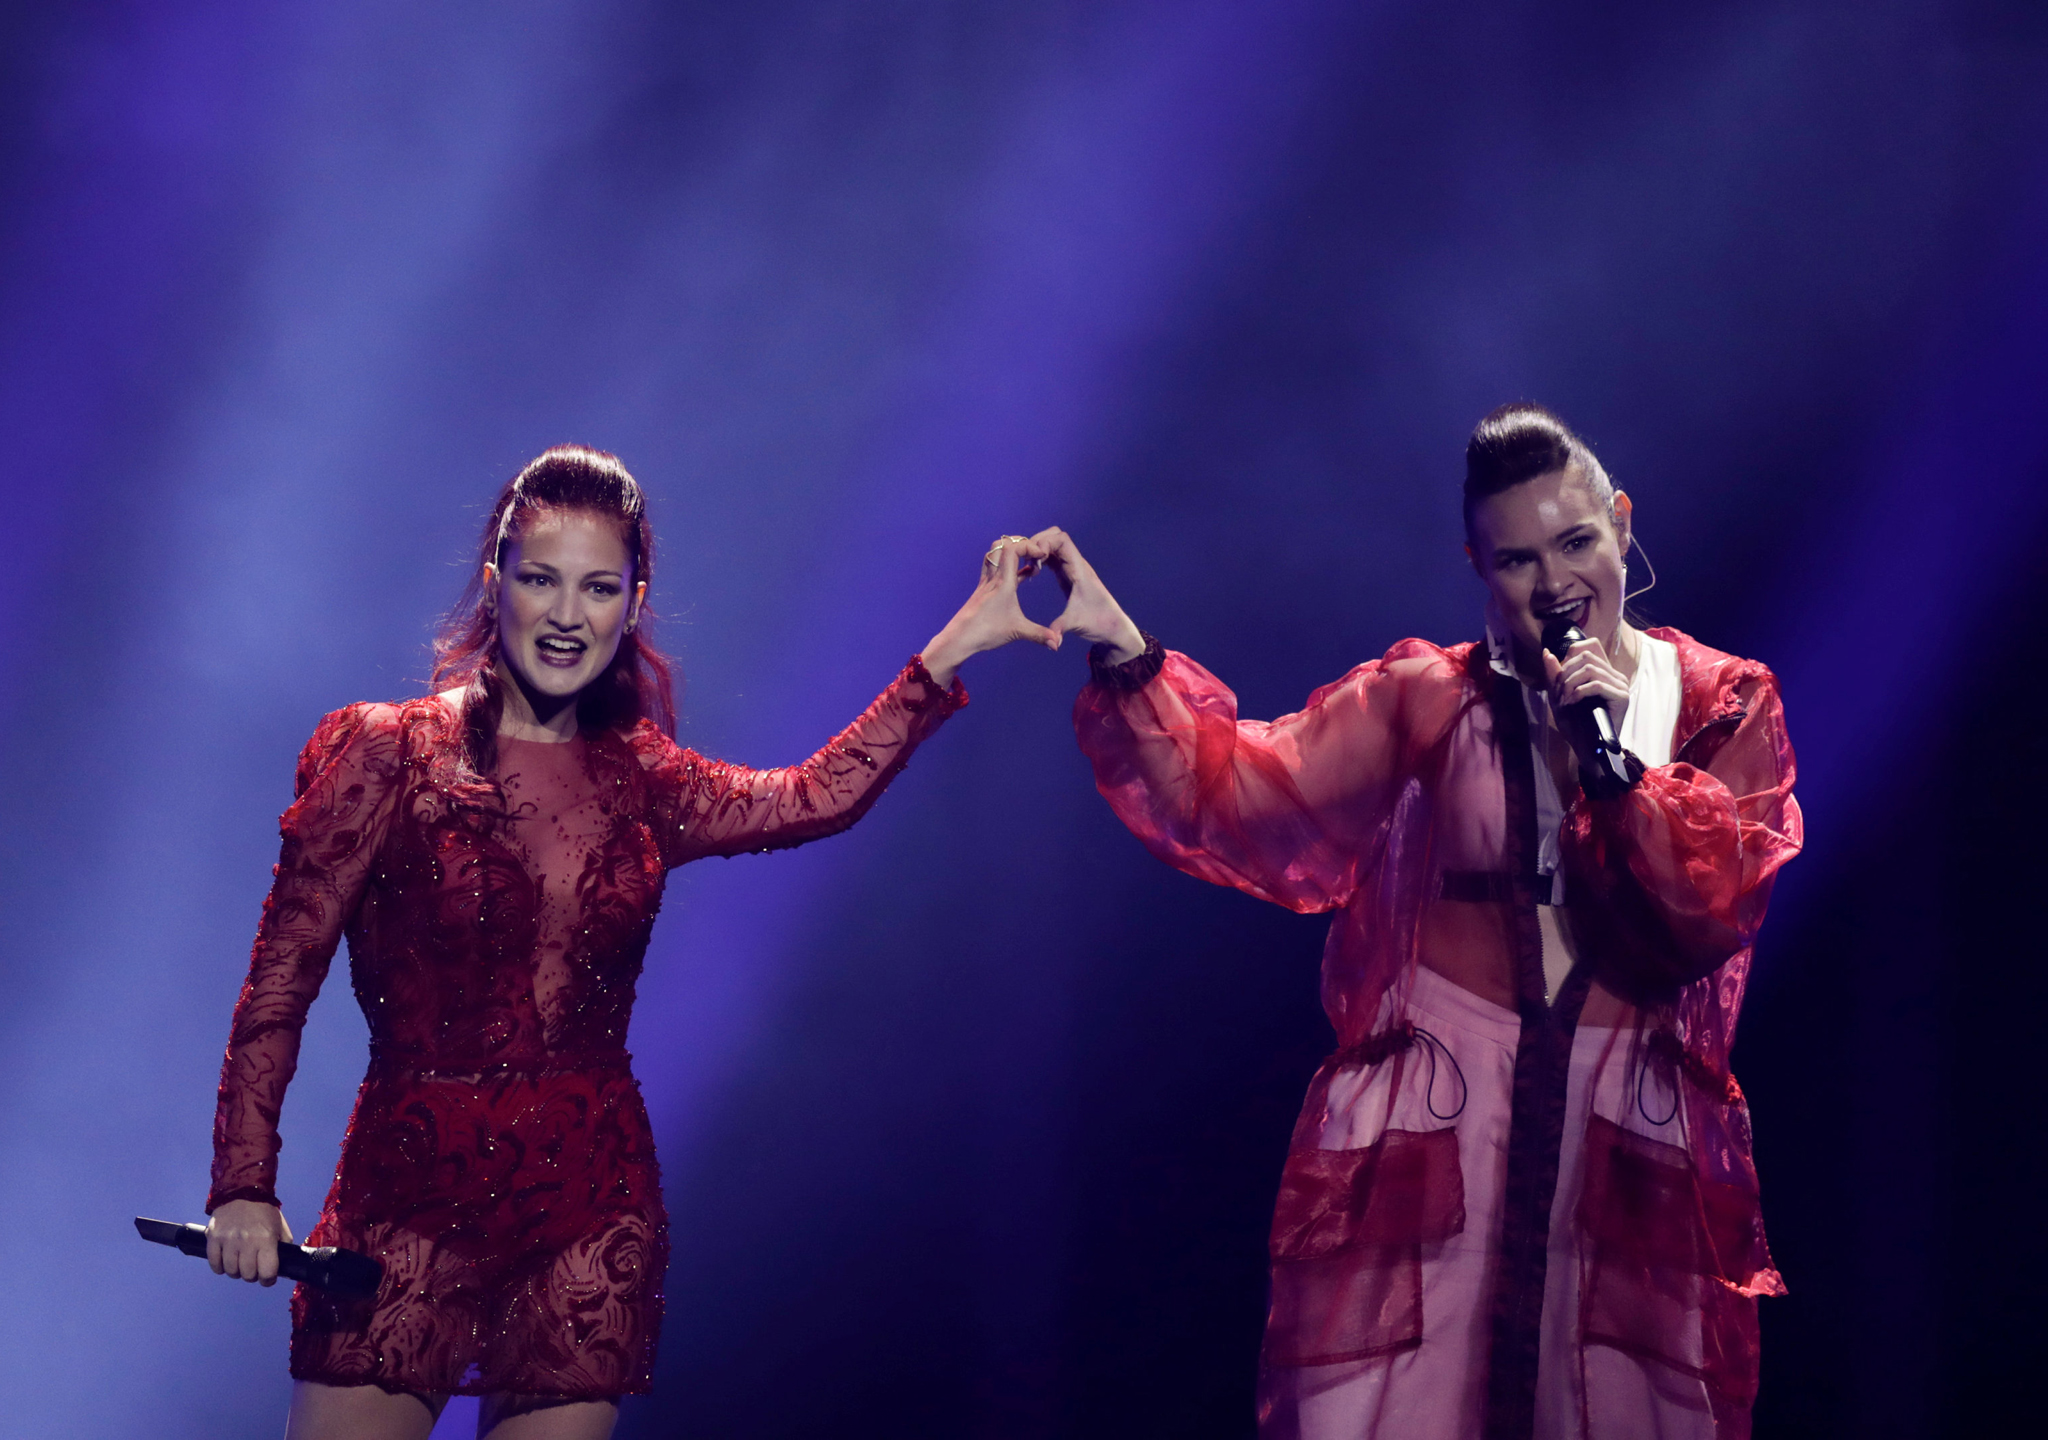 Jessika y Jenifer Brening representan a San Marino en Eurovisión 2018 con la canción “Who we are”